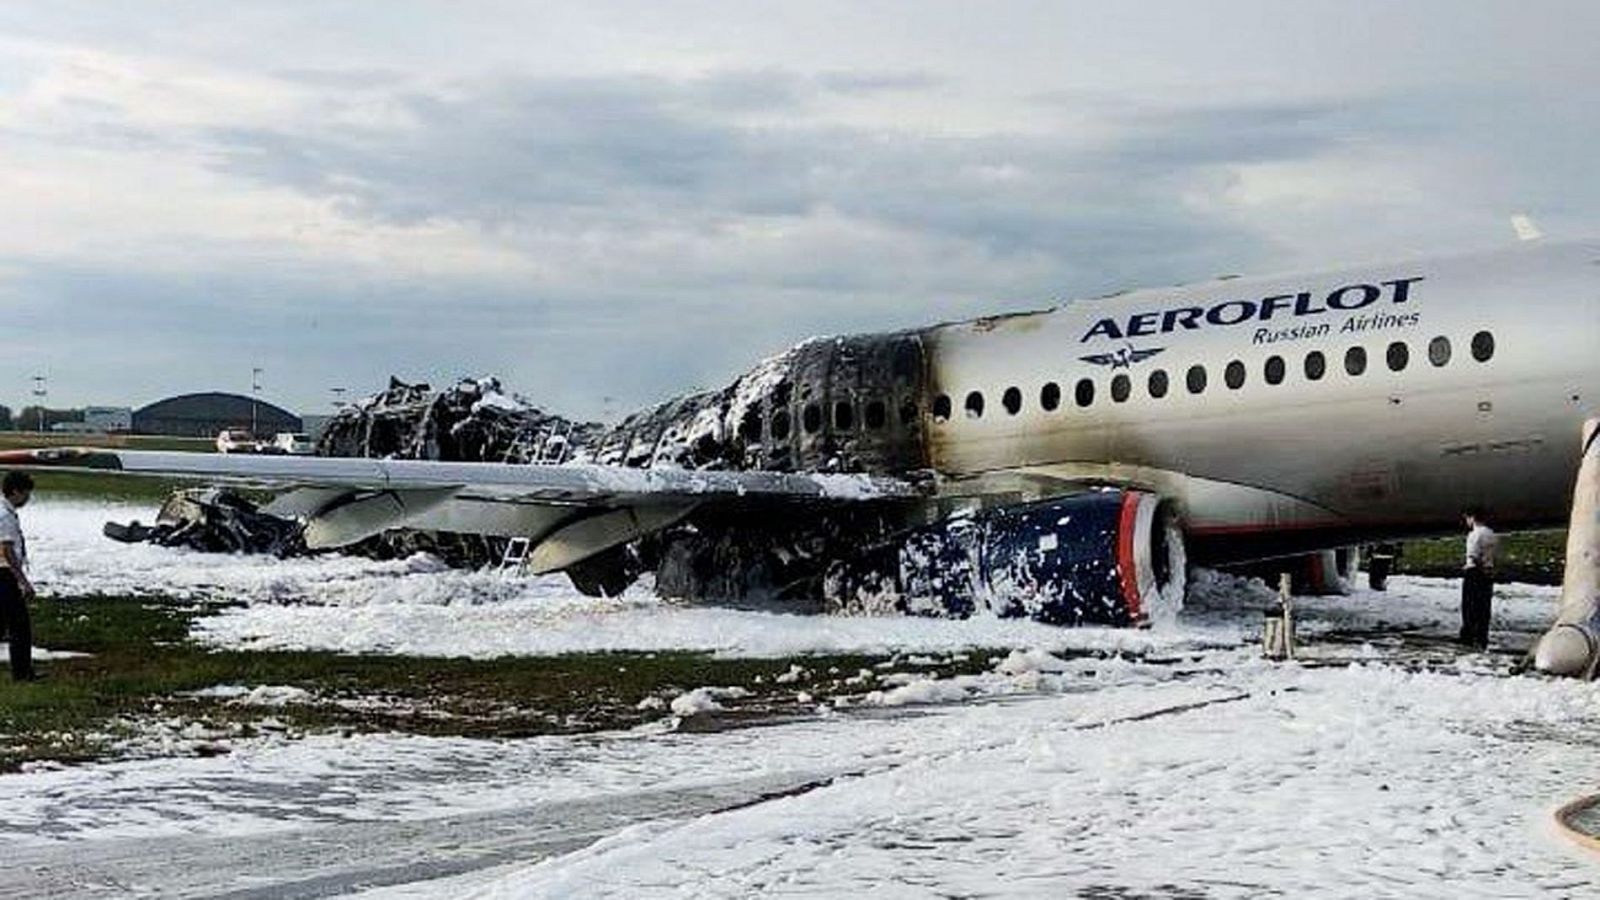 Accidente aéreo Moscú: Los expertos cuestionan que un rayo provocara el accidente aéreo en Moscú - RTVE.es